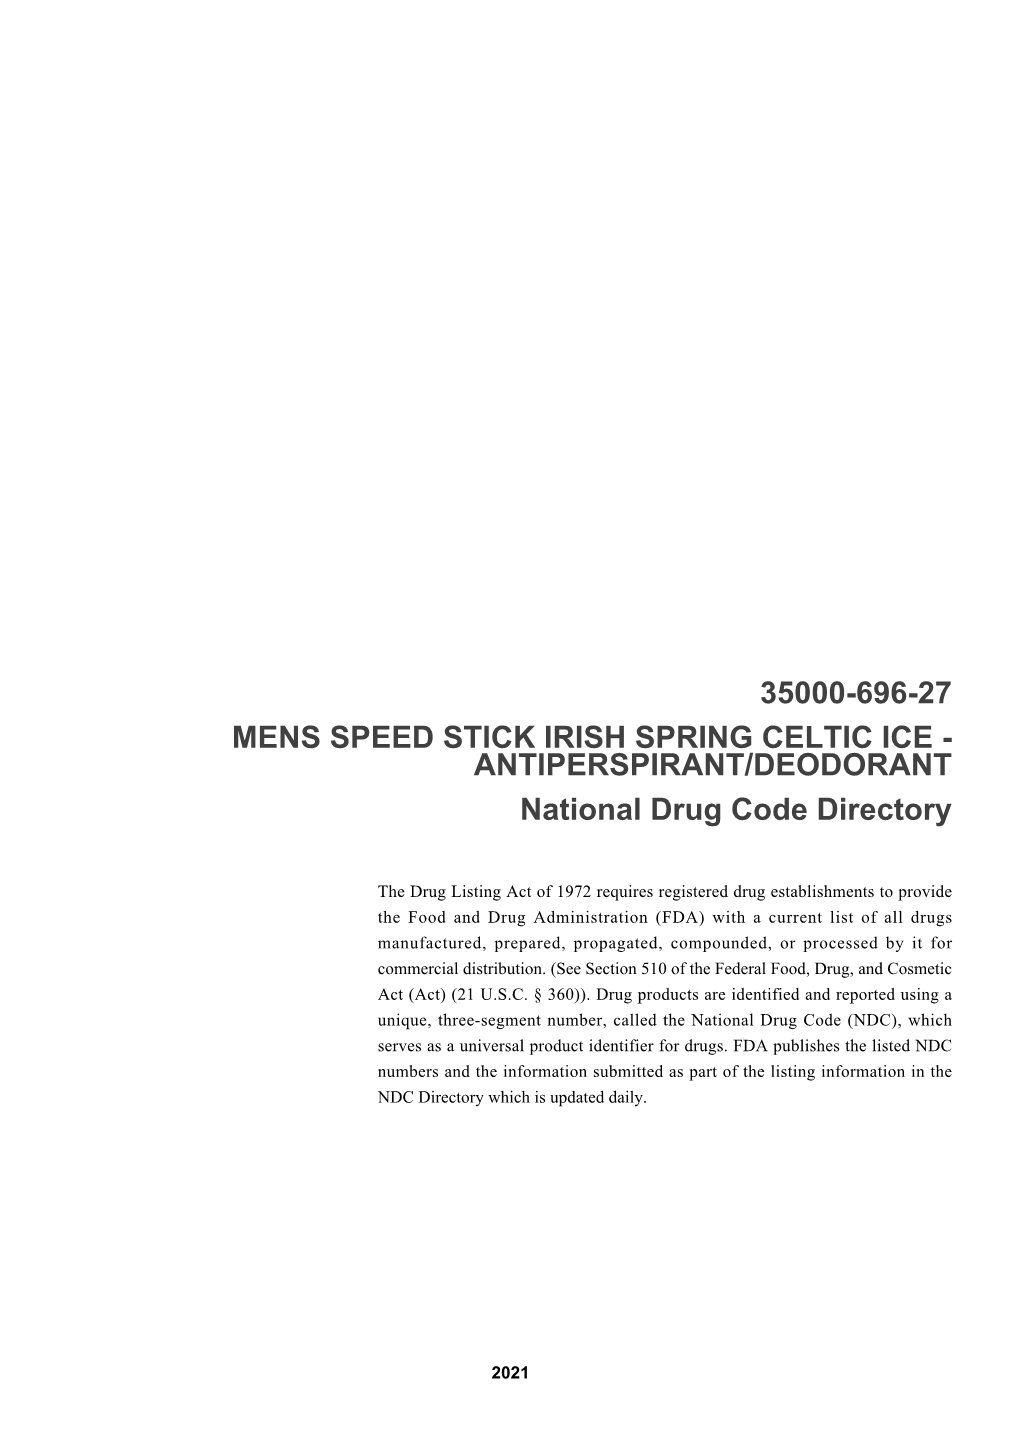 35000-696-27 Mens Speed Stick Irish Spring Celtic Ice - Antiperspirant/Deodorant